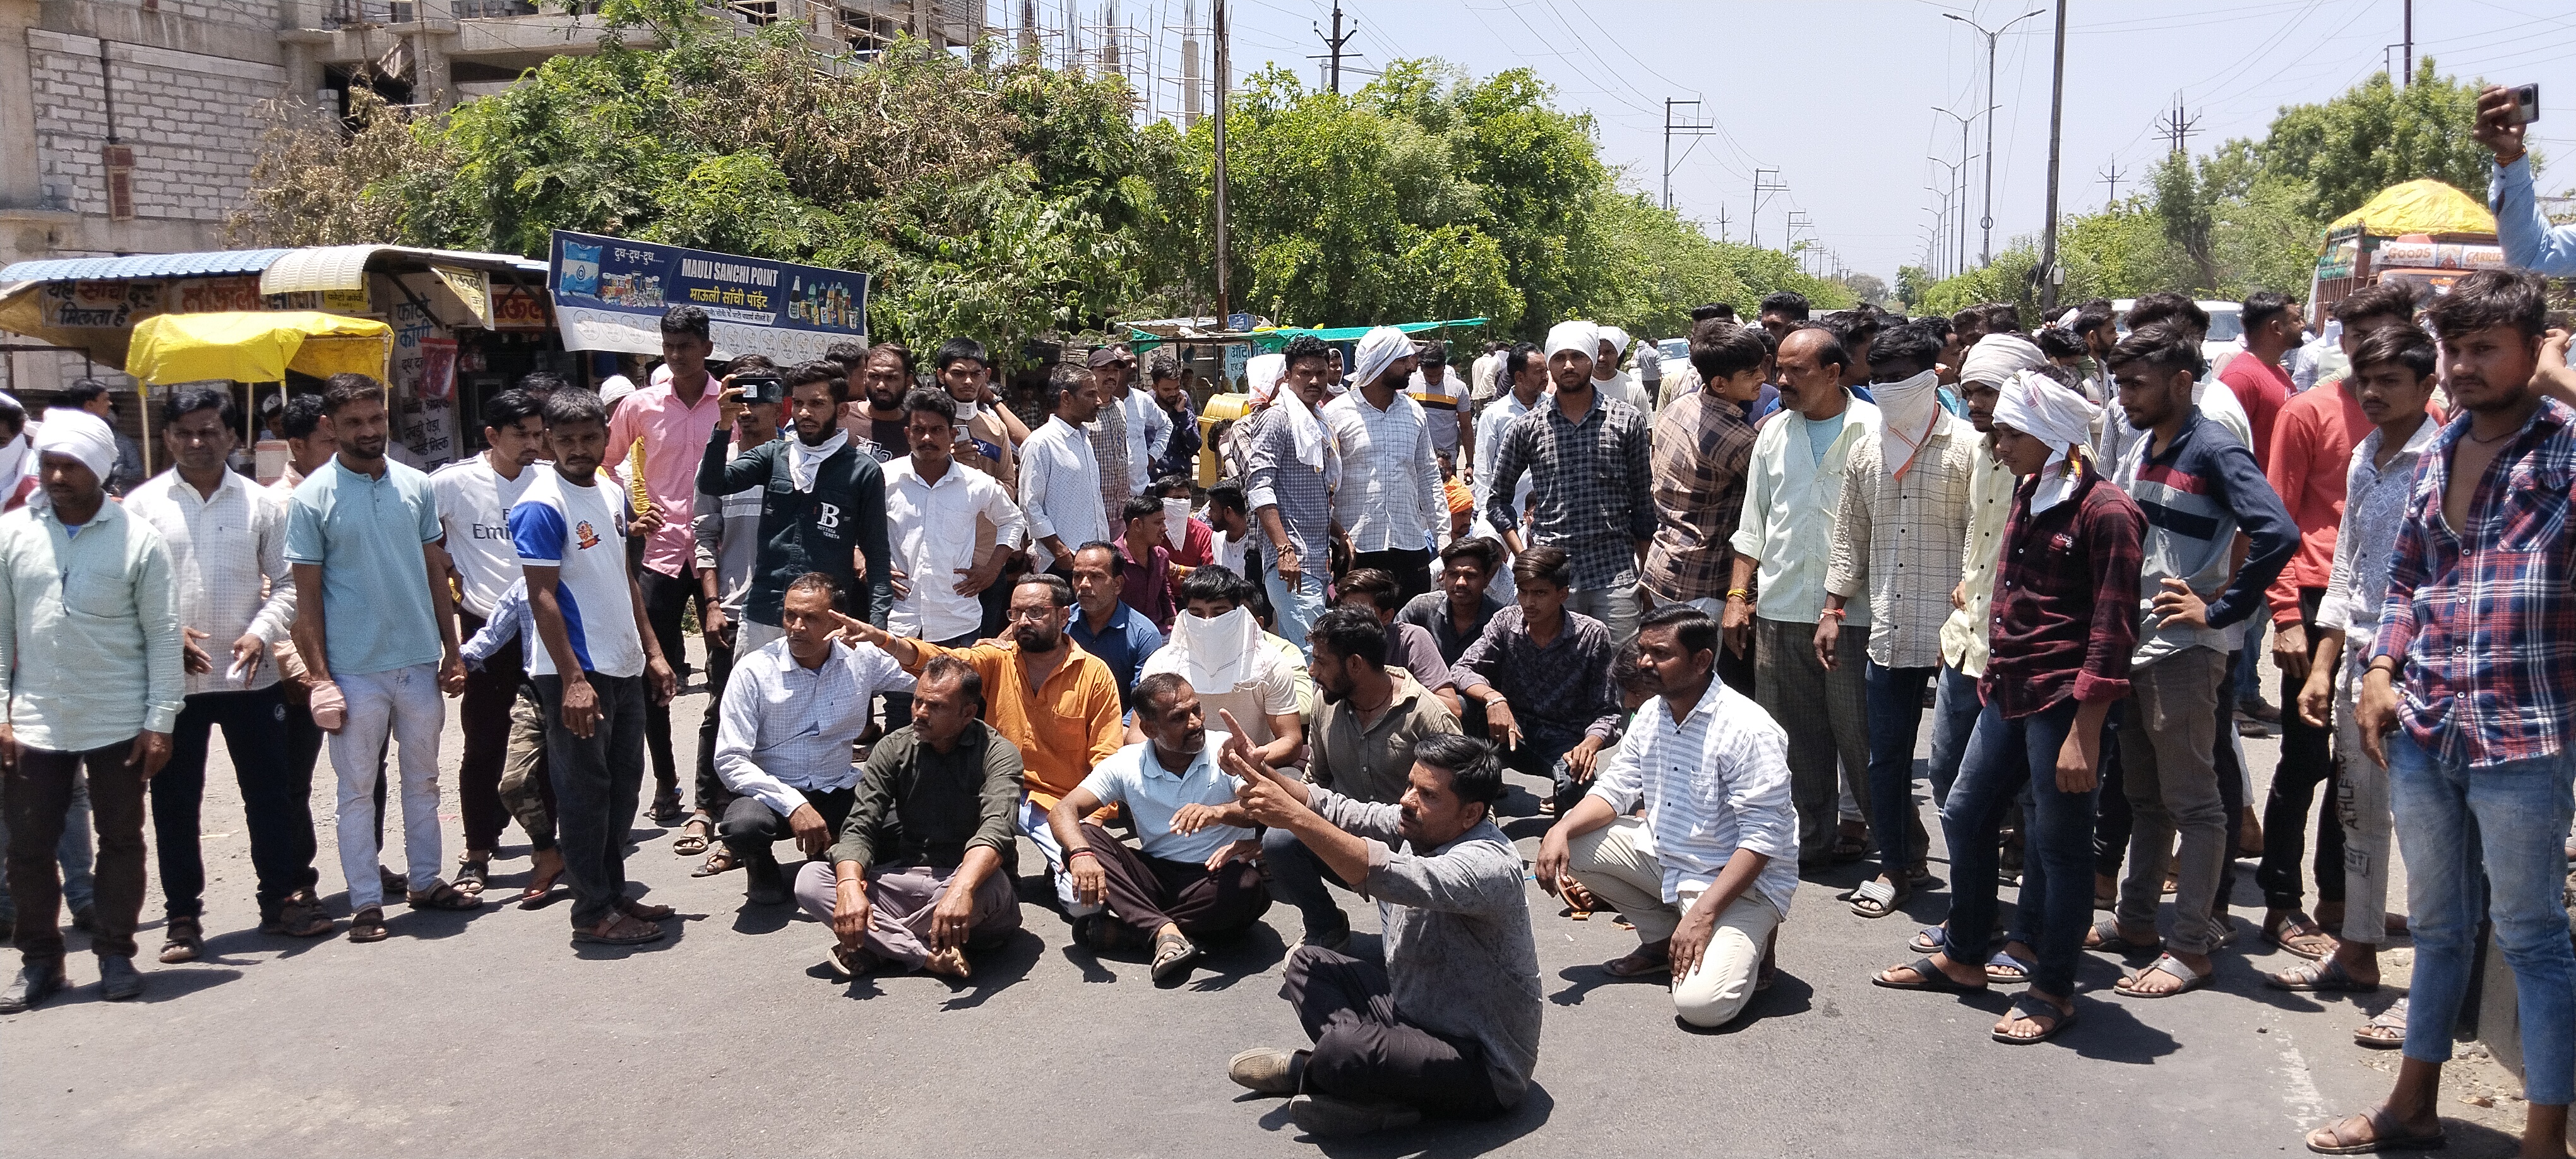 बुरहानपुर में सीएम के आने के पहले चक्काजाम, लाइनमैन की मौत के बाद परिजनों ने रोड
पर बैठकर किया हंगामा